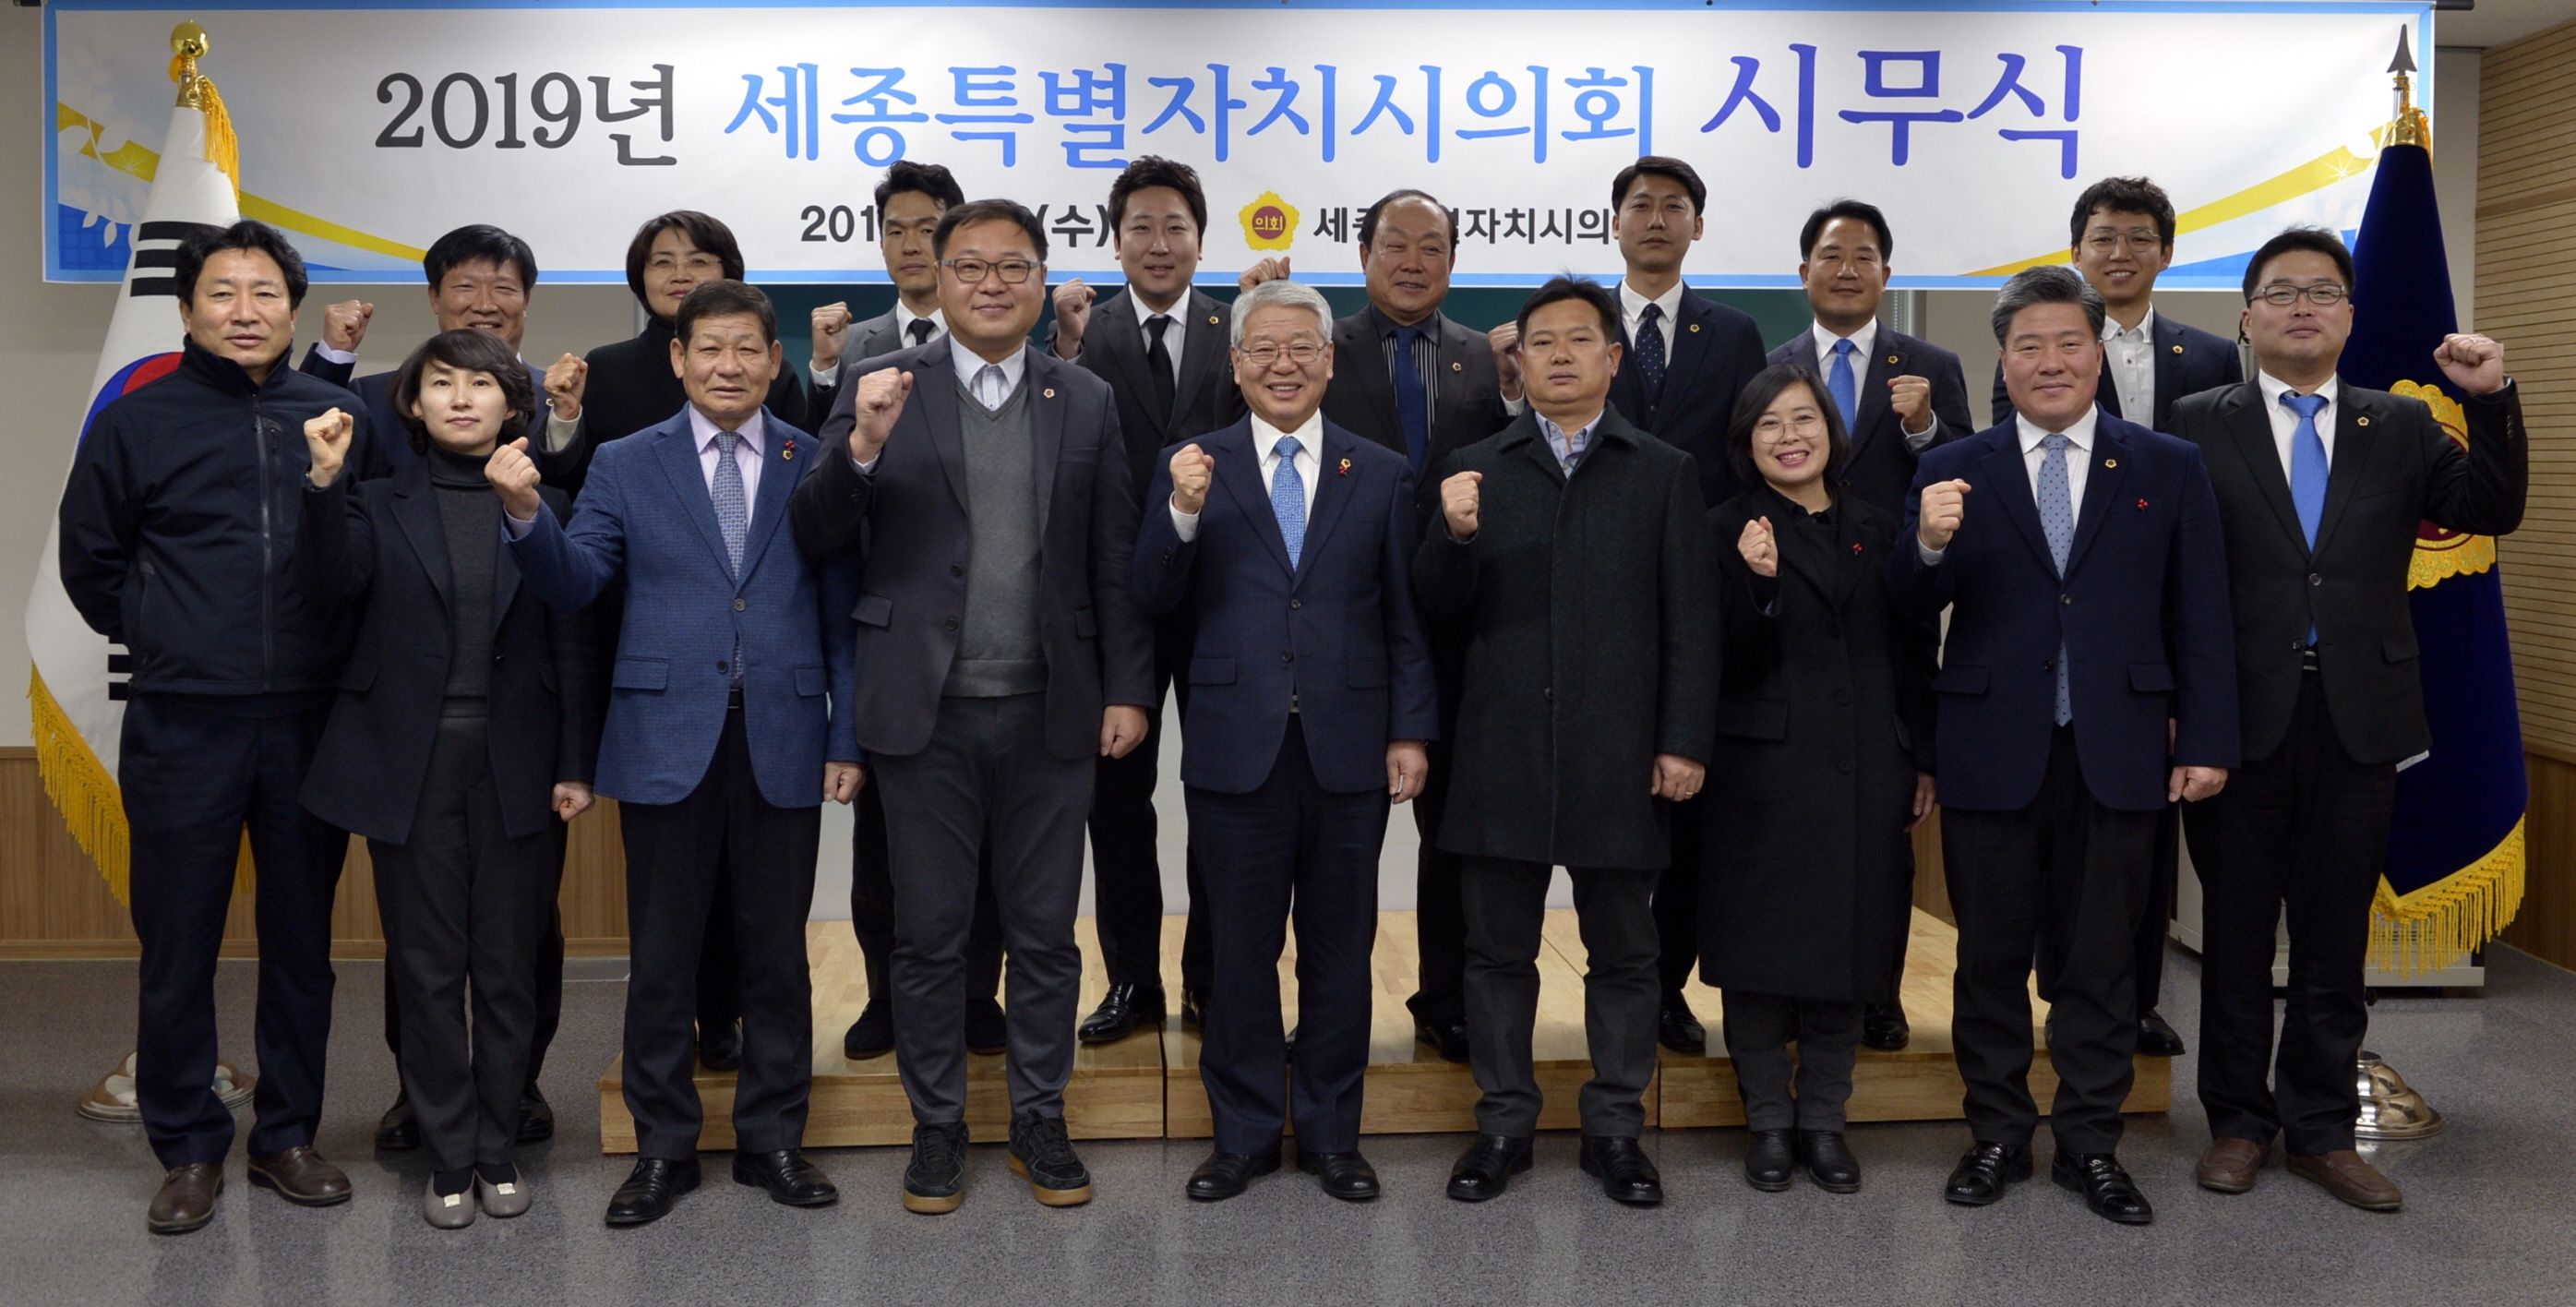 세종시의회 2019년 시무식 개최…새해 각오 다져